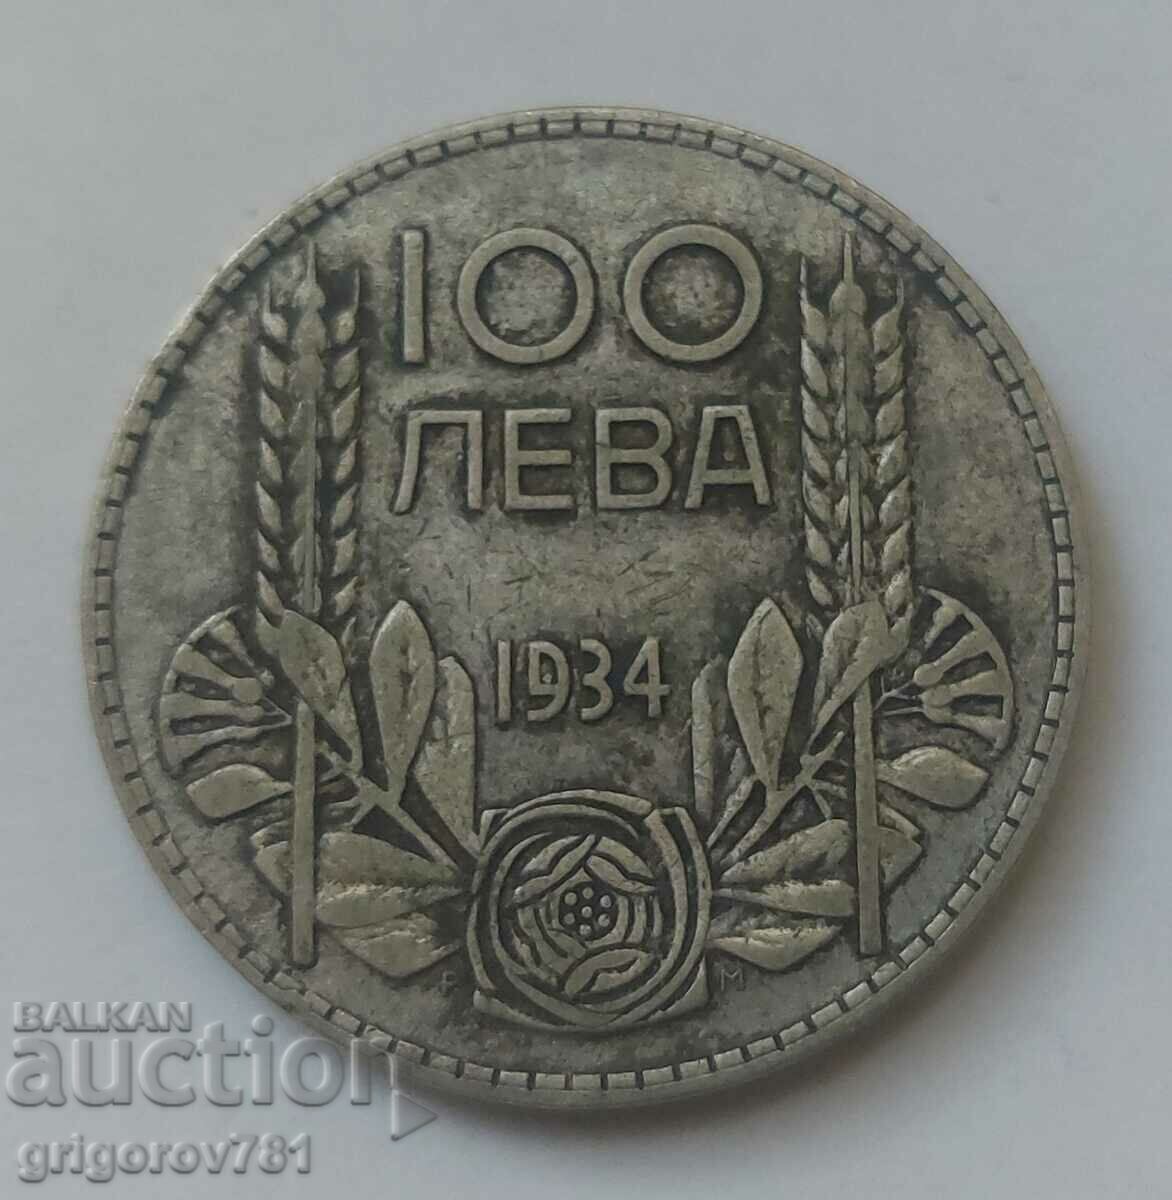 100 leva silver Bulgaria 1934 - silver coin #59